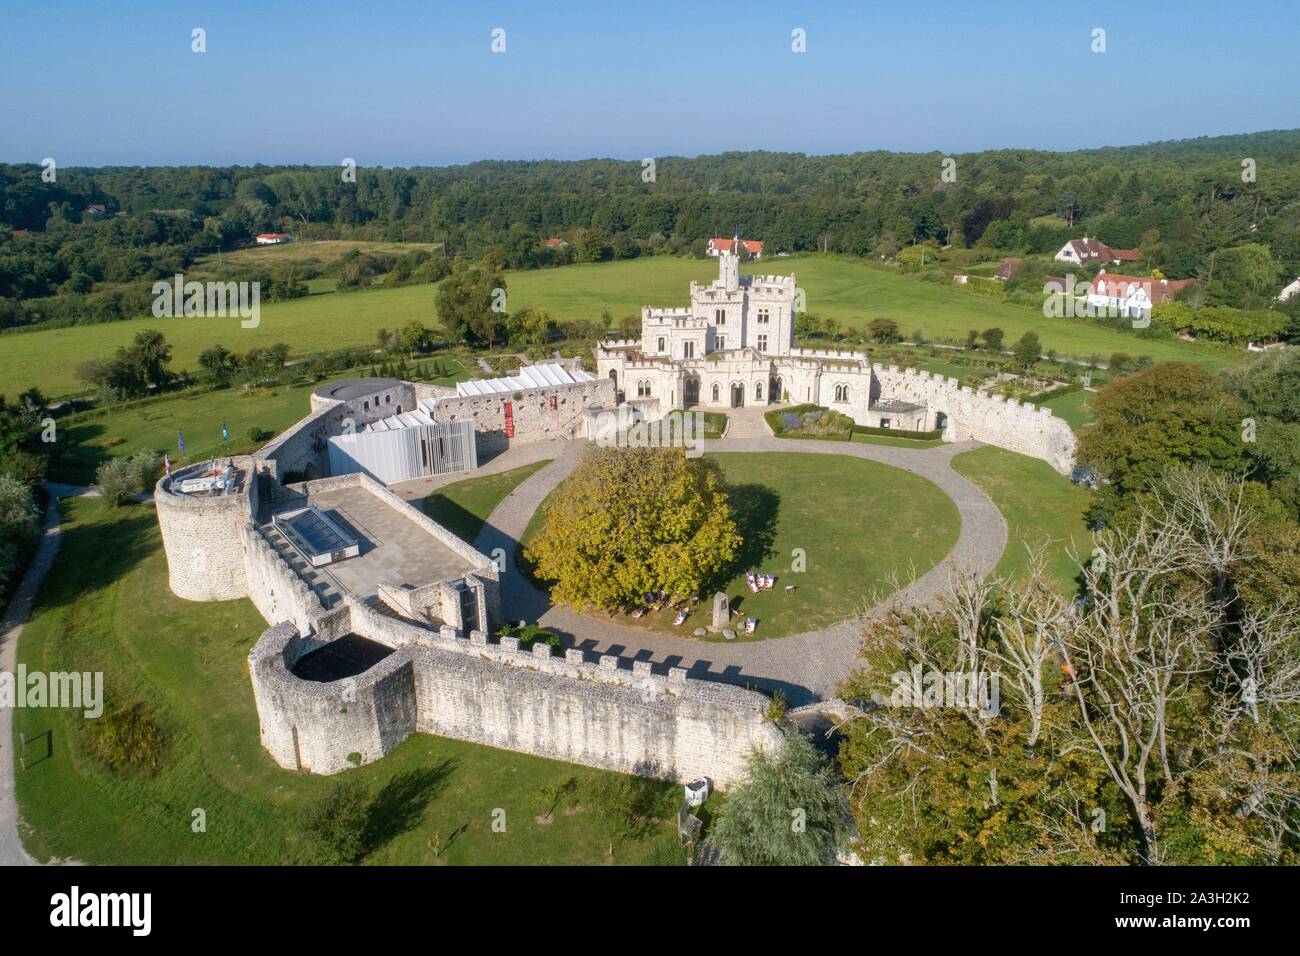 La France, Pas de Calais, Calais, Hardelot château, manoir de style Tudor du début du xxe siècle construite sur les fondations d'un château (vue aérienne) Banque D'Images